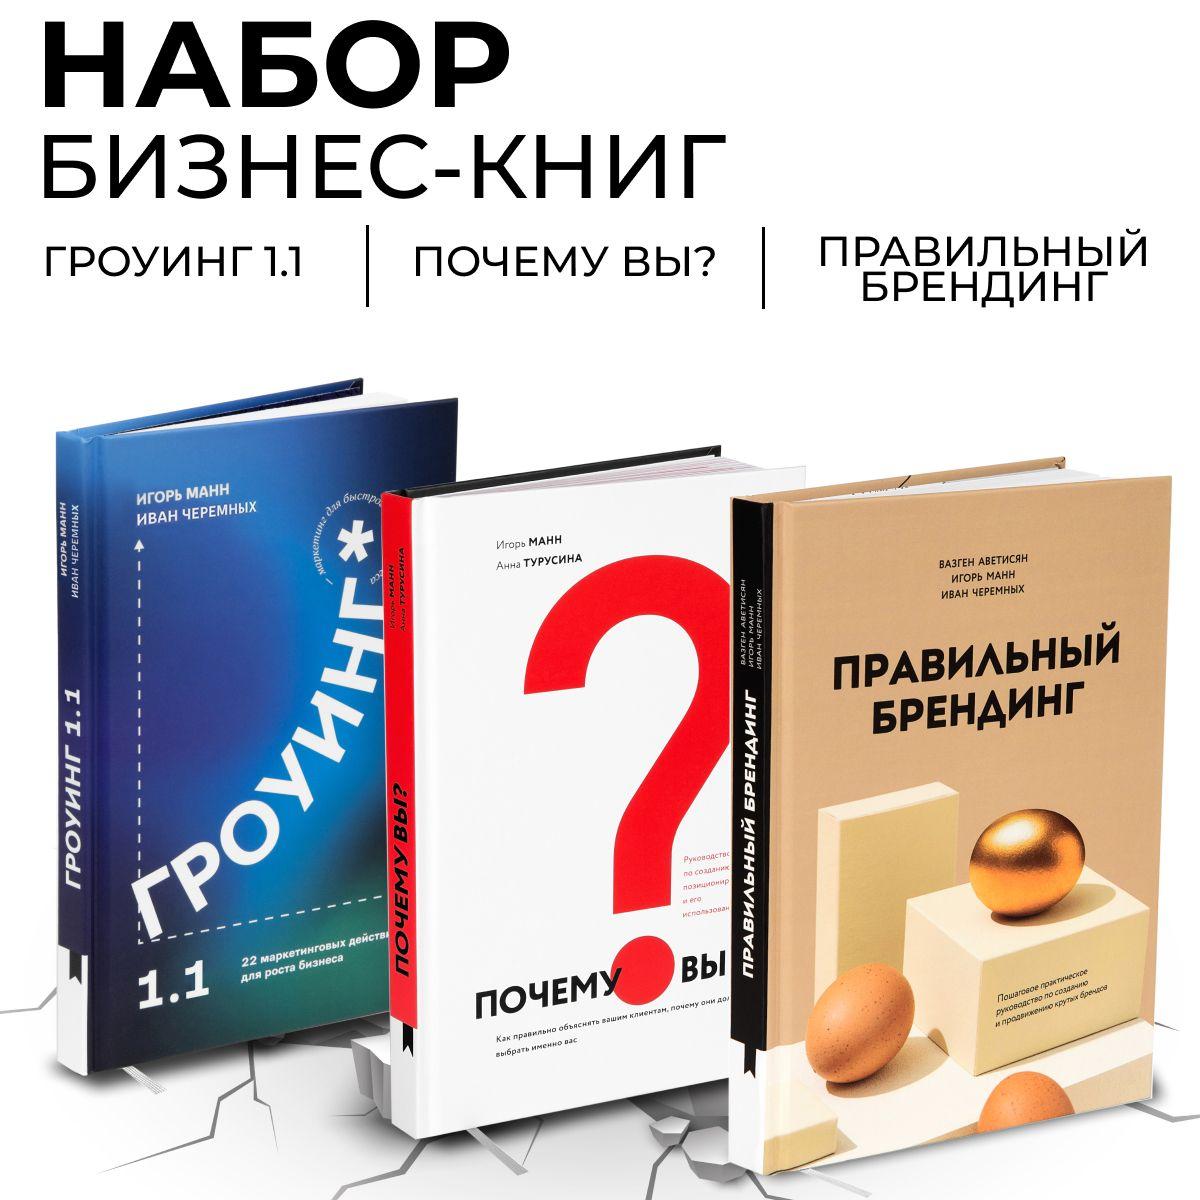 Набор бизнес-книг от издательства "Книгиум" | Аветисян Вазген Акопович, Манн Игорь Борисович